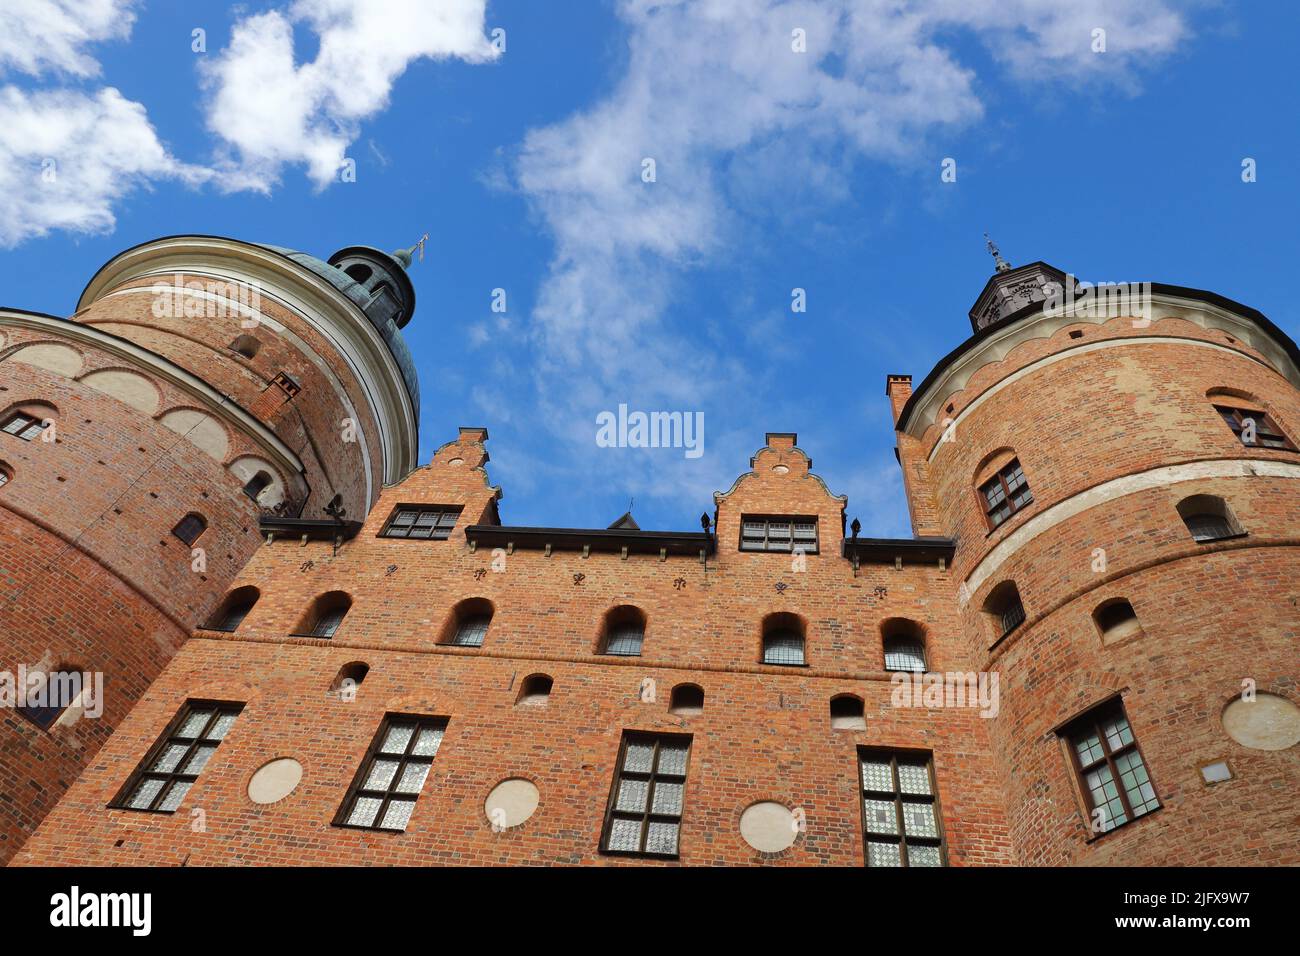 Vue à angle bas du château Gripsholm datant du 16th siècle situé dans la province suédoise de Sodermanland. Banque D'Images